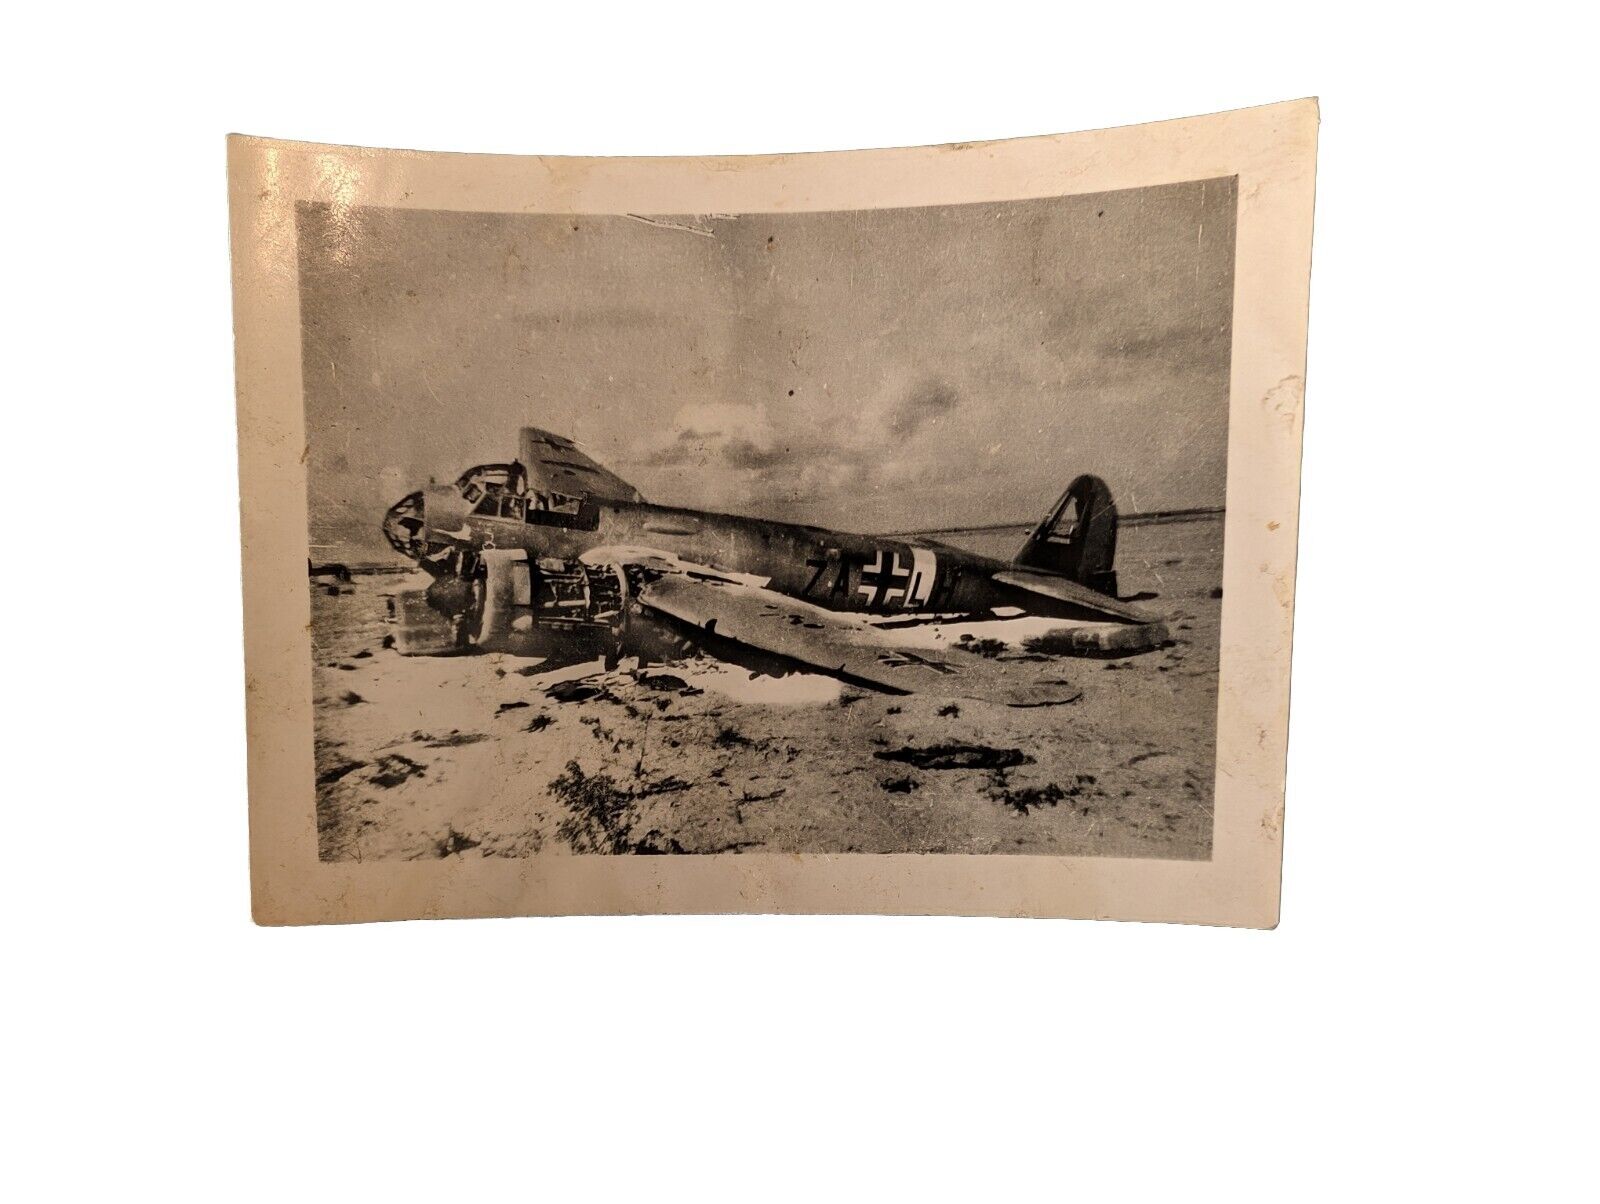  WW2 Original Photo - Wrecked German JU88 2.5x3.5